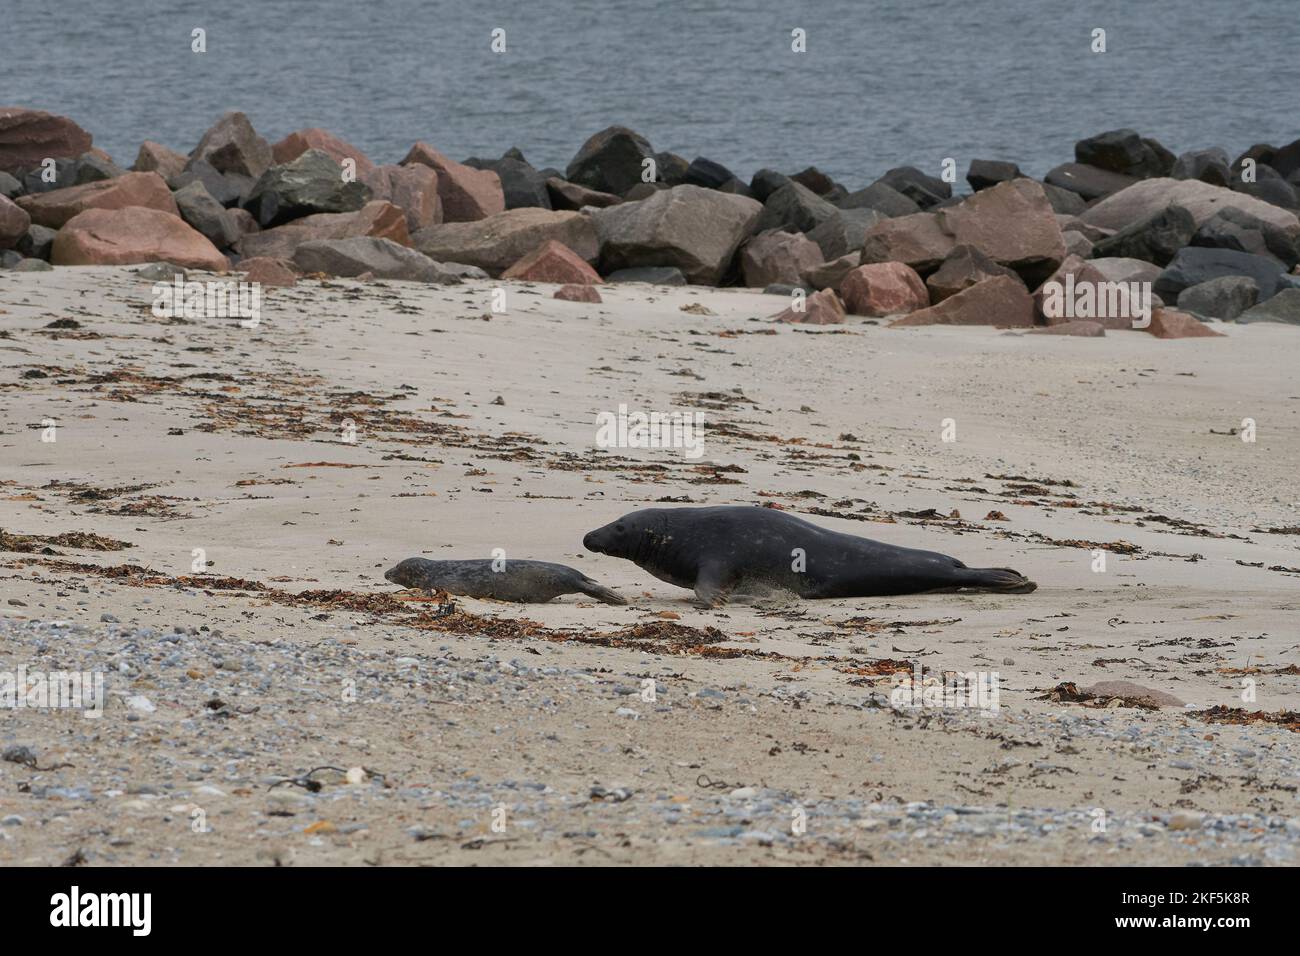 Grypus di Halichoerus, Kegelrobbe Bulle jagt Jungtier, toro di foca grigio che caccia a juvenil Foto Stock